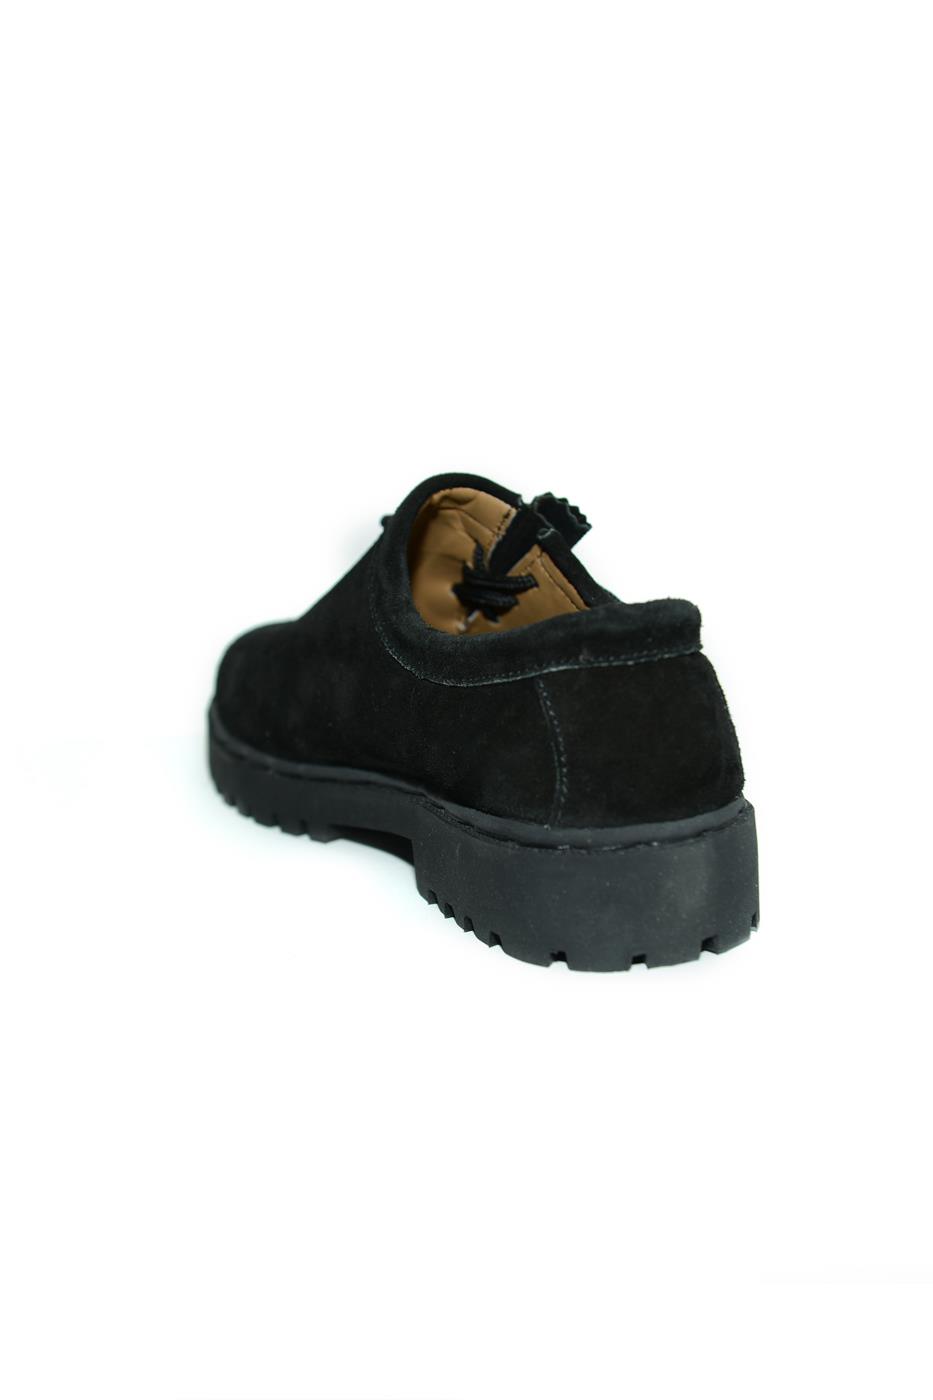 Schuhe schwarz Wildleder